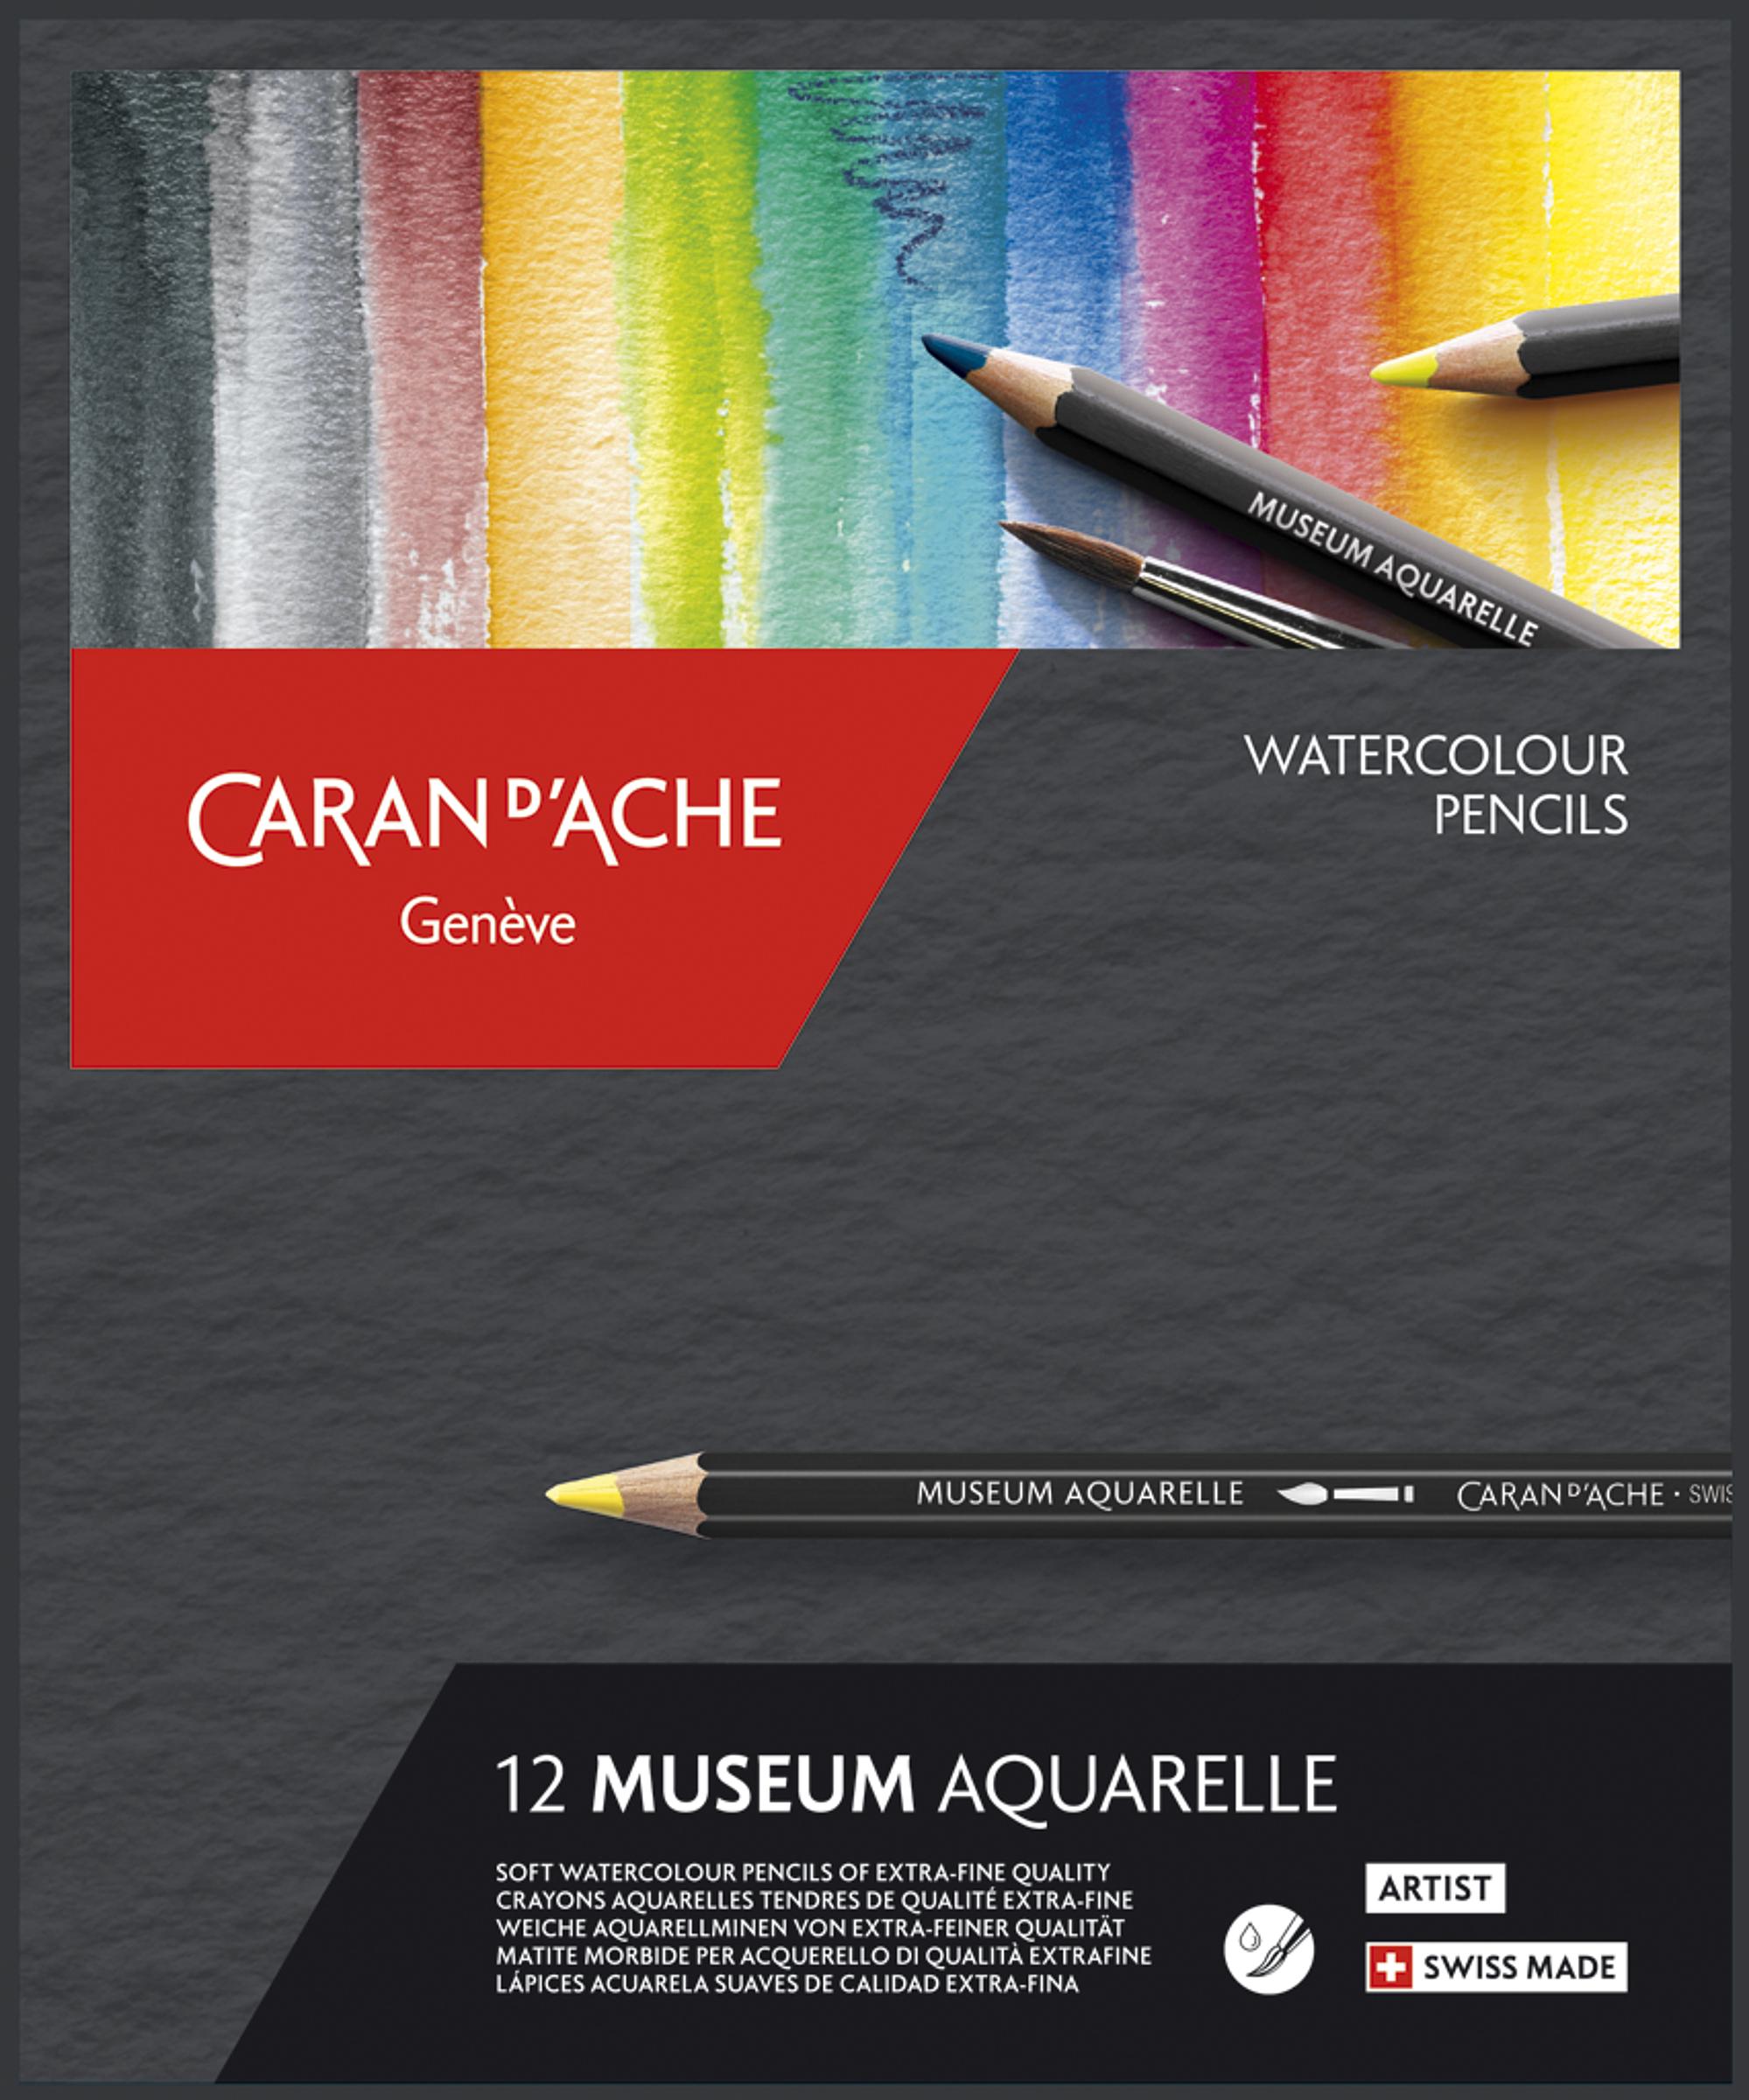 Combinaison De Crayons Aquarelle 46 Pièces, Stylo De Couleur Pour